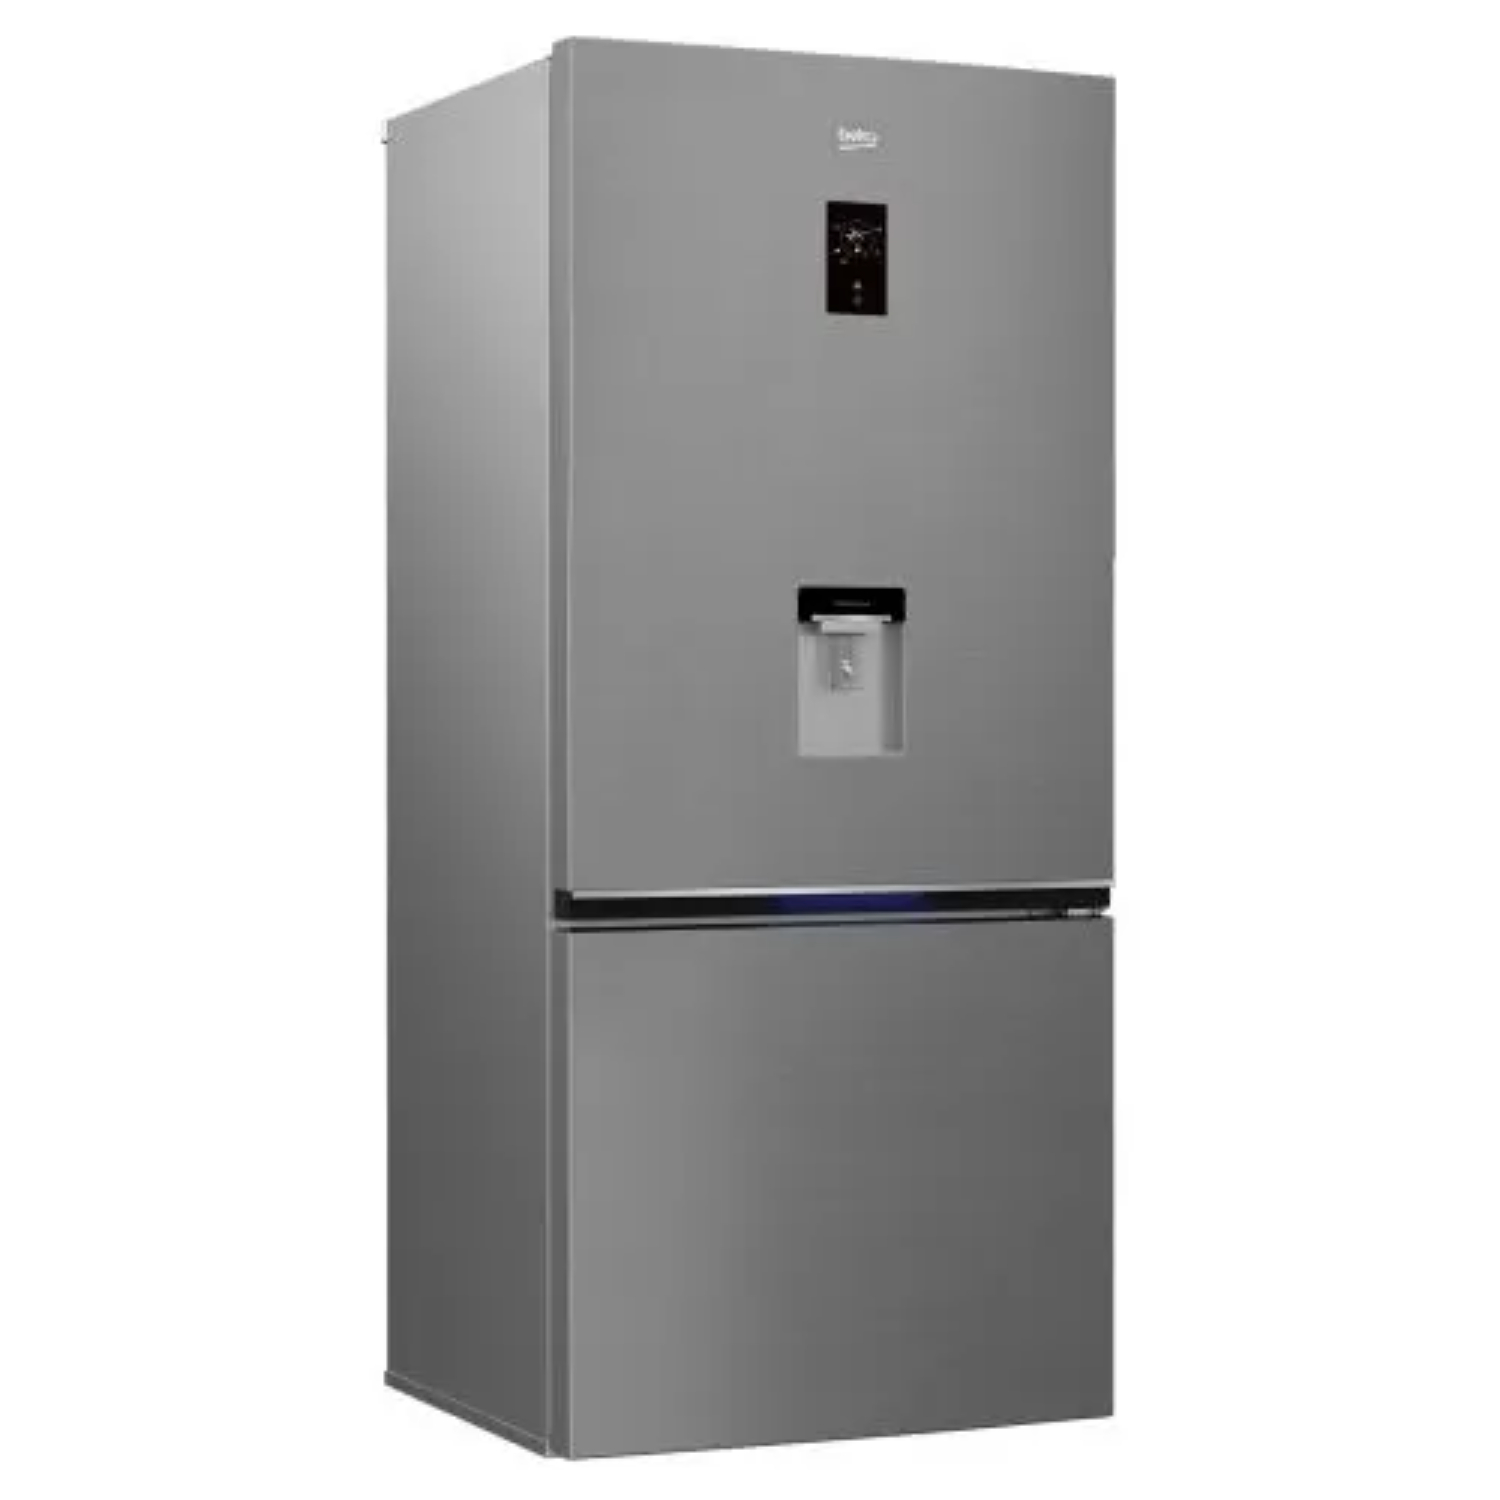 الوادي شجرة توتشي رسوم الدخول  Alaska Freestanding Refrigerator, No Frost, 2 Doors, 303 liter, Stainless  Steel - KSD NF 320